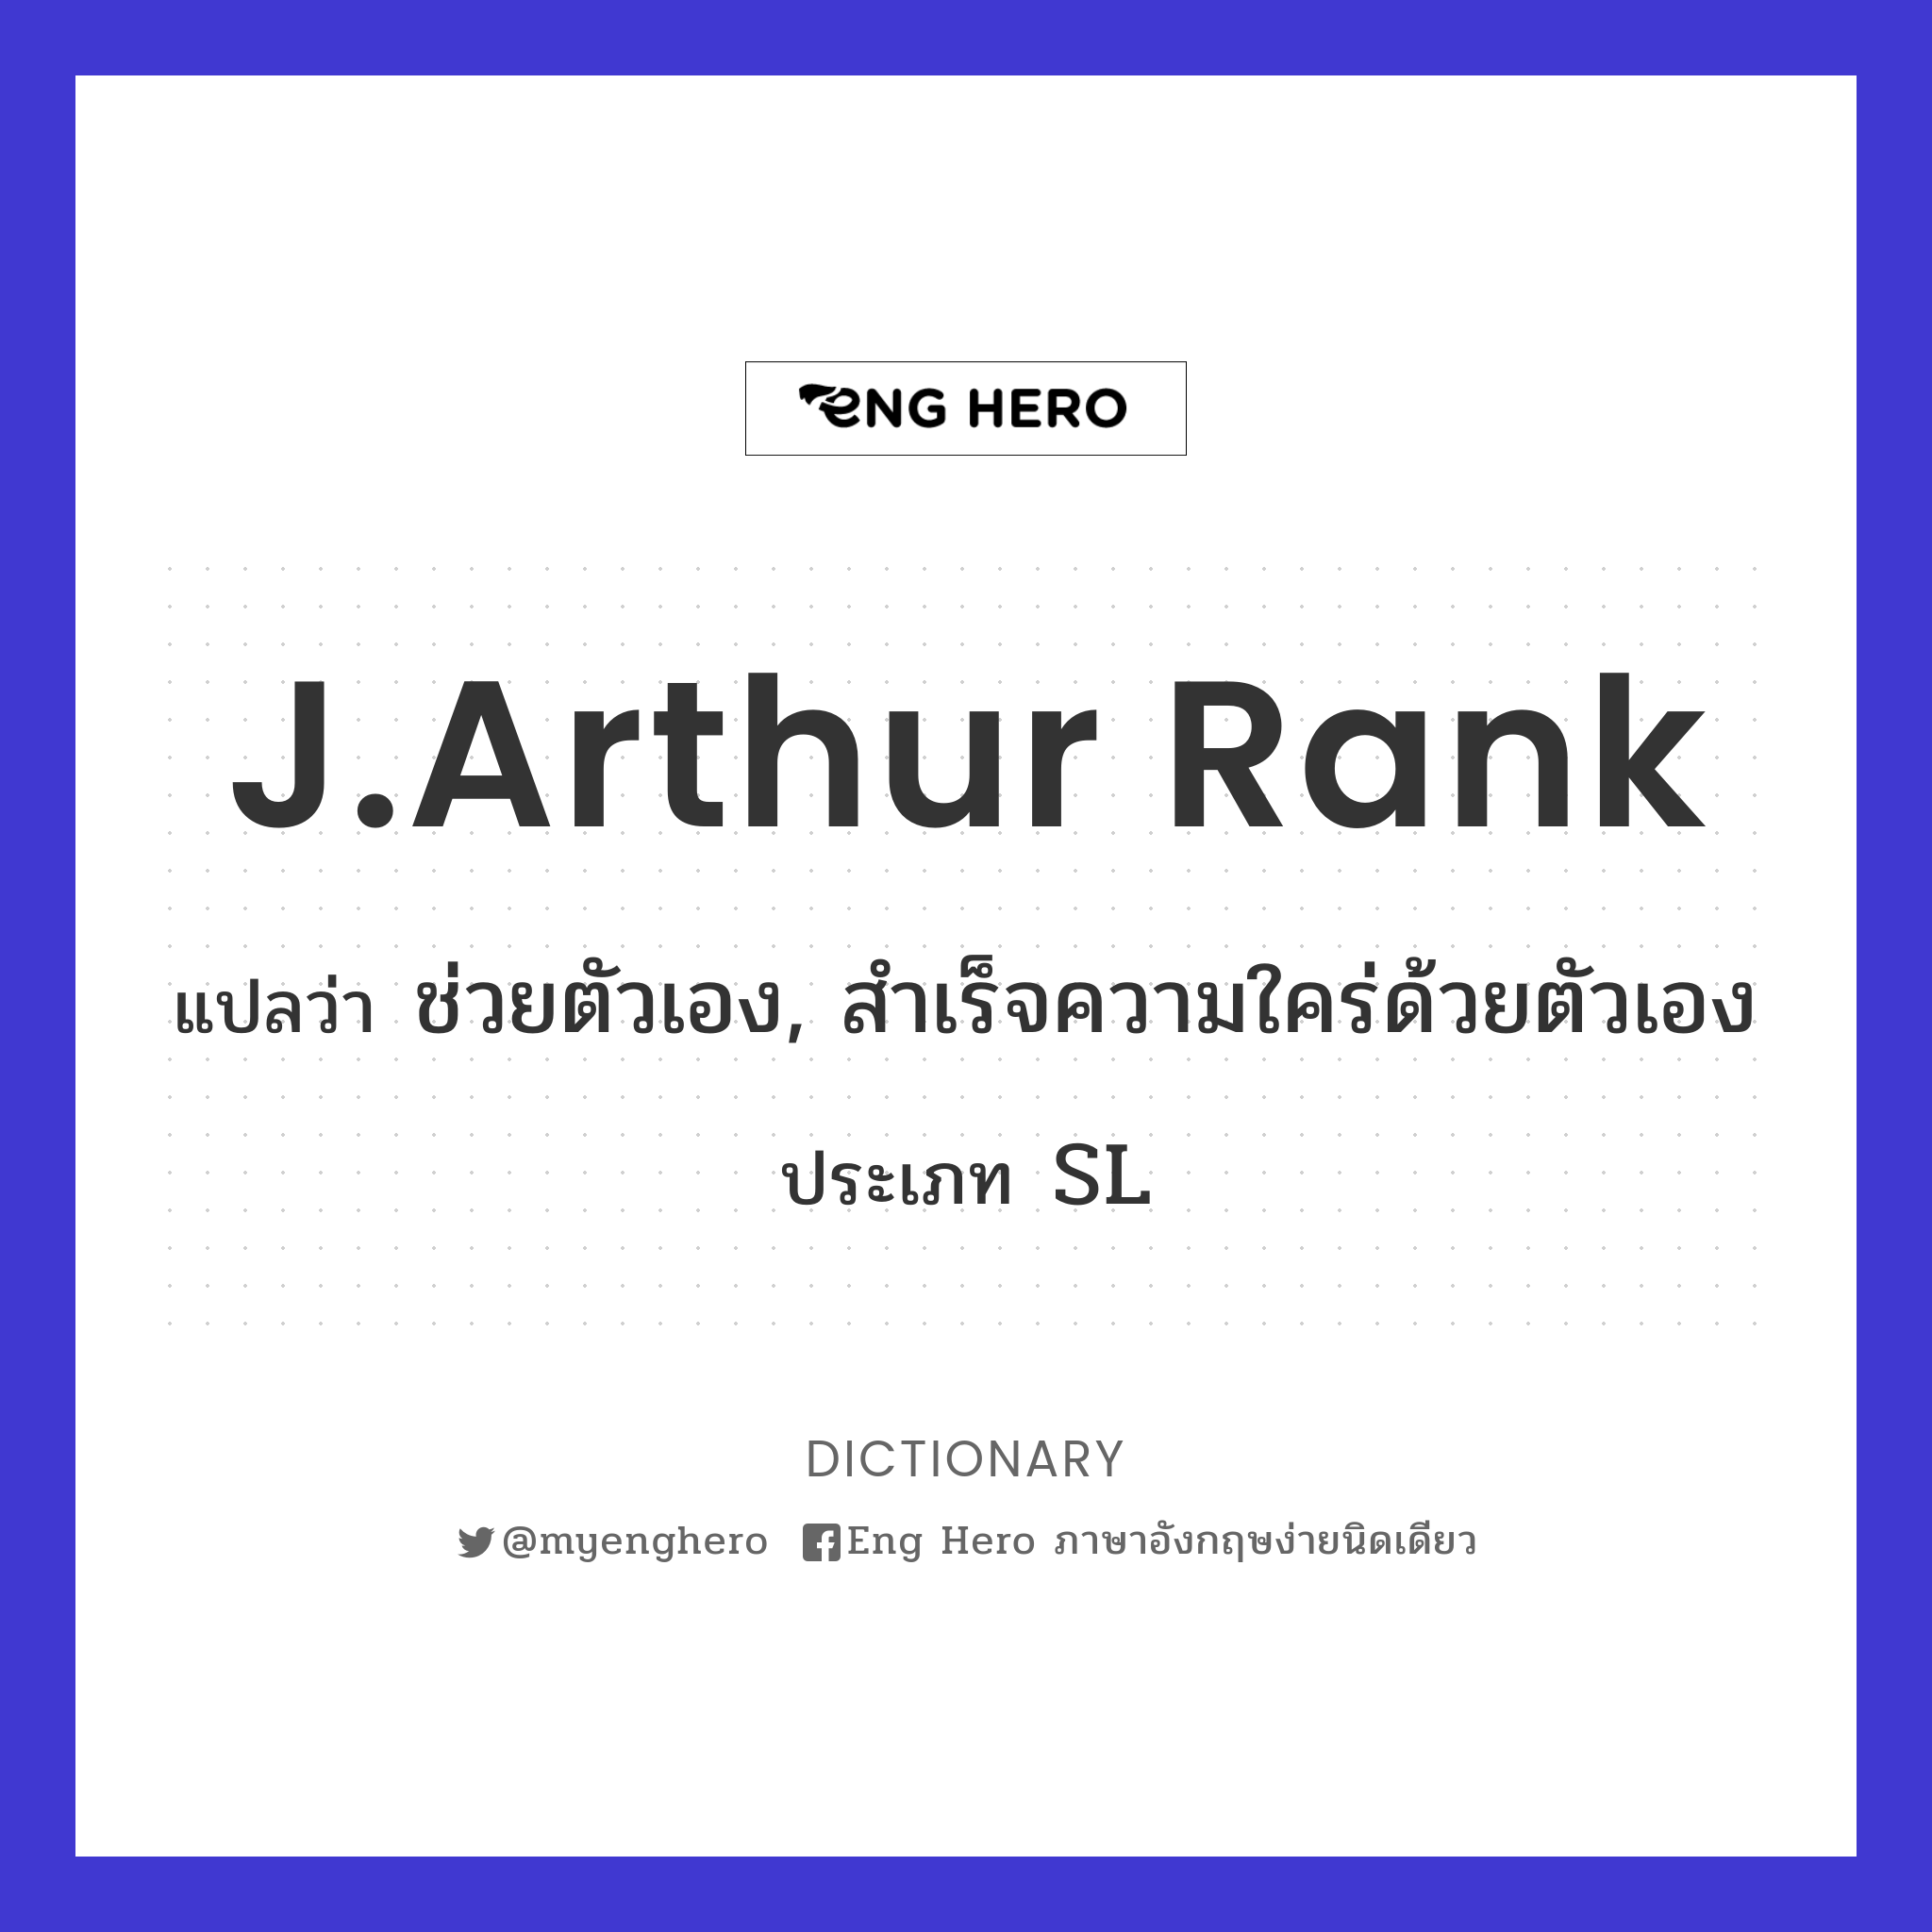 J.Arthur Rank